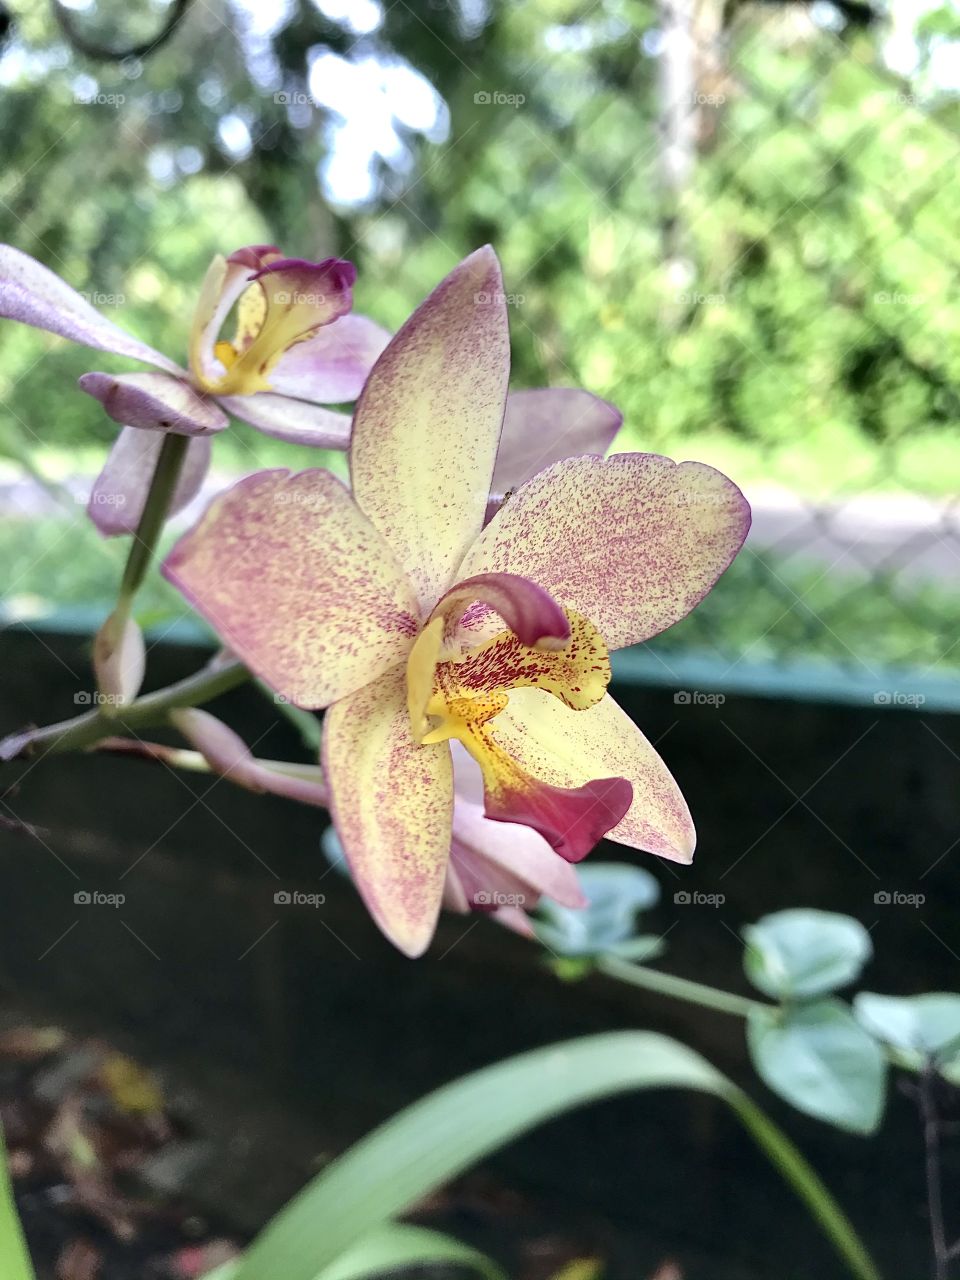 Ground Orchid ( Genus: Spathoglottis )